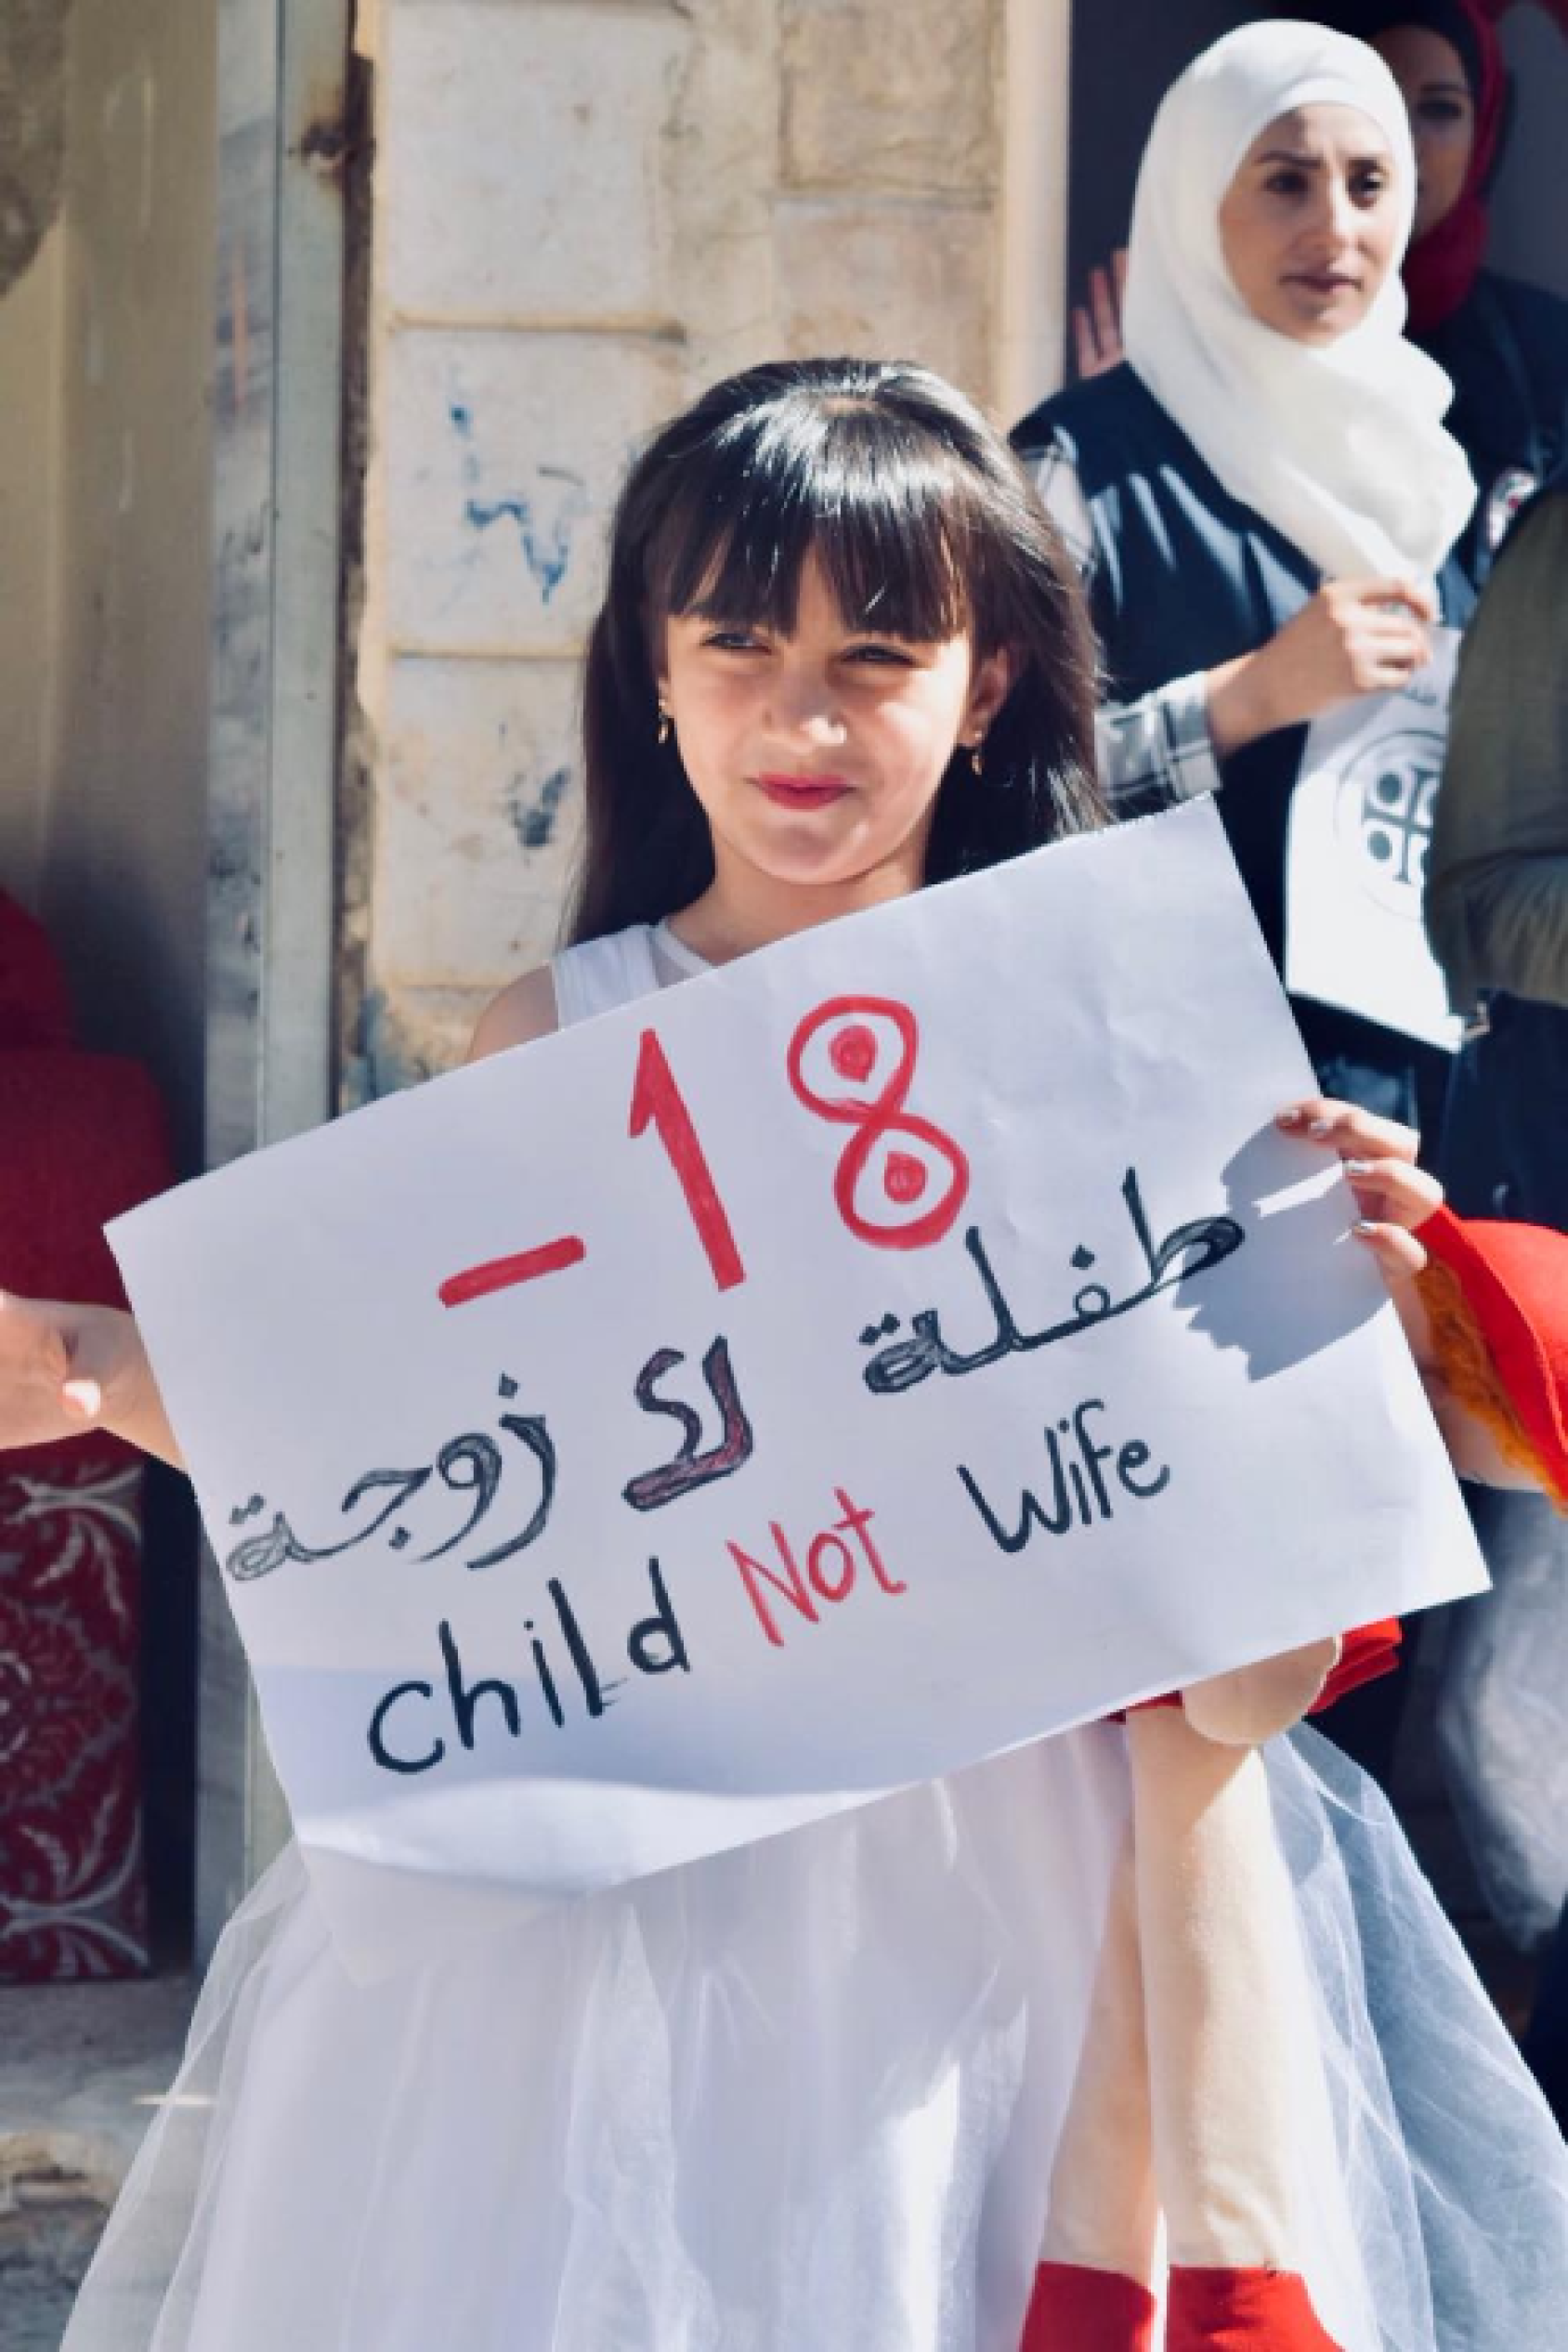 فتاة صغيرة ترتدي فستان زفاف وتحمل لافتة كتب عليها: طفلة لا زوجة.